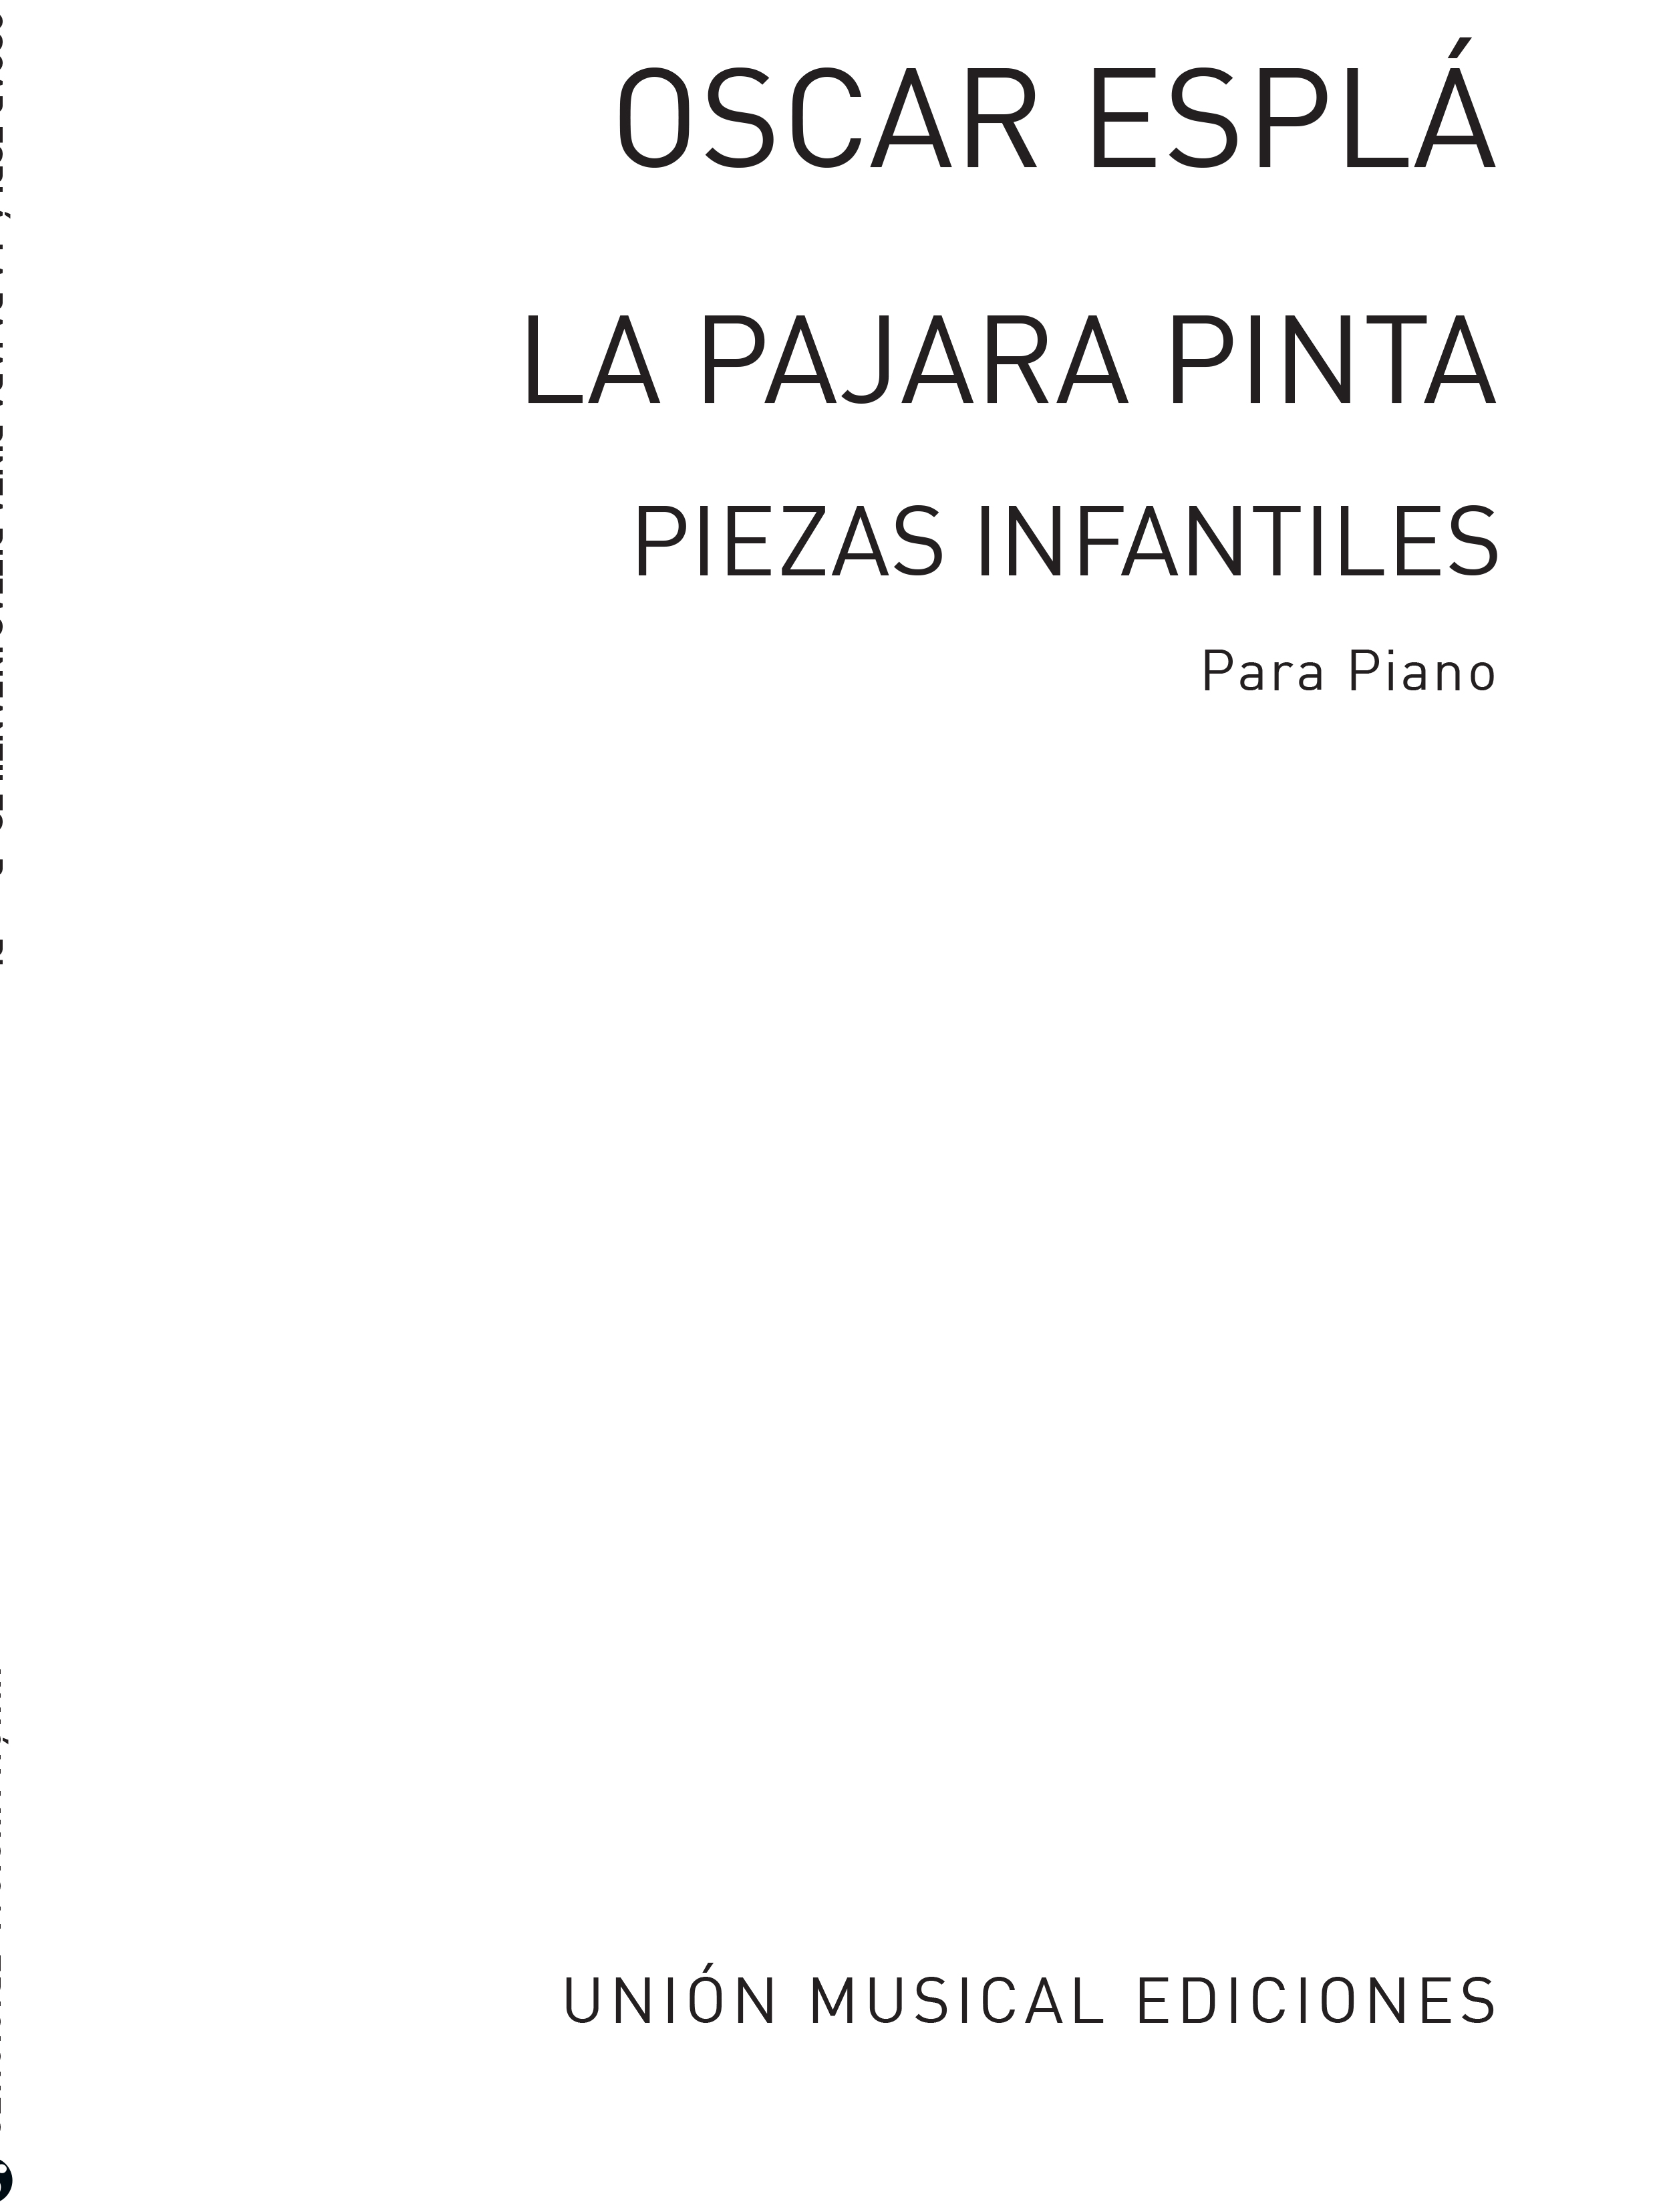 Oscar Espla: La Pajara Pinta Piezas Infantiles Piano: Piano: Instrumental Album